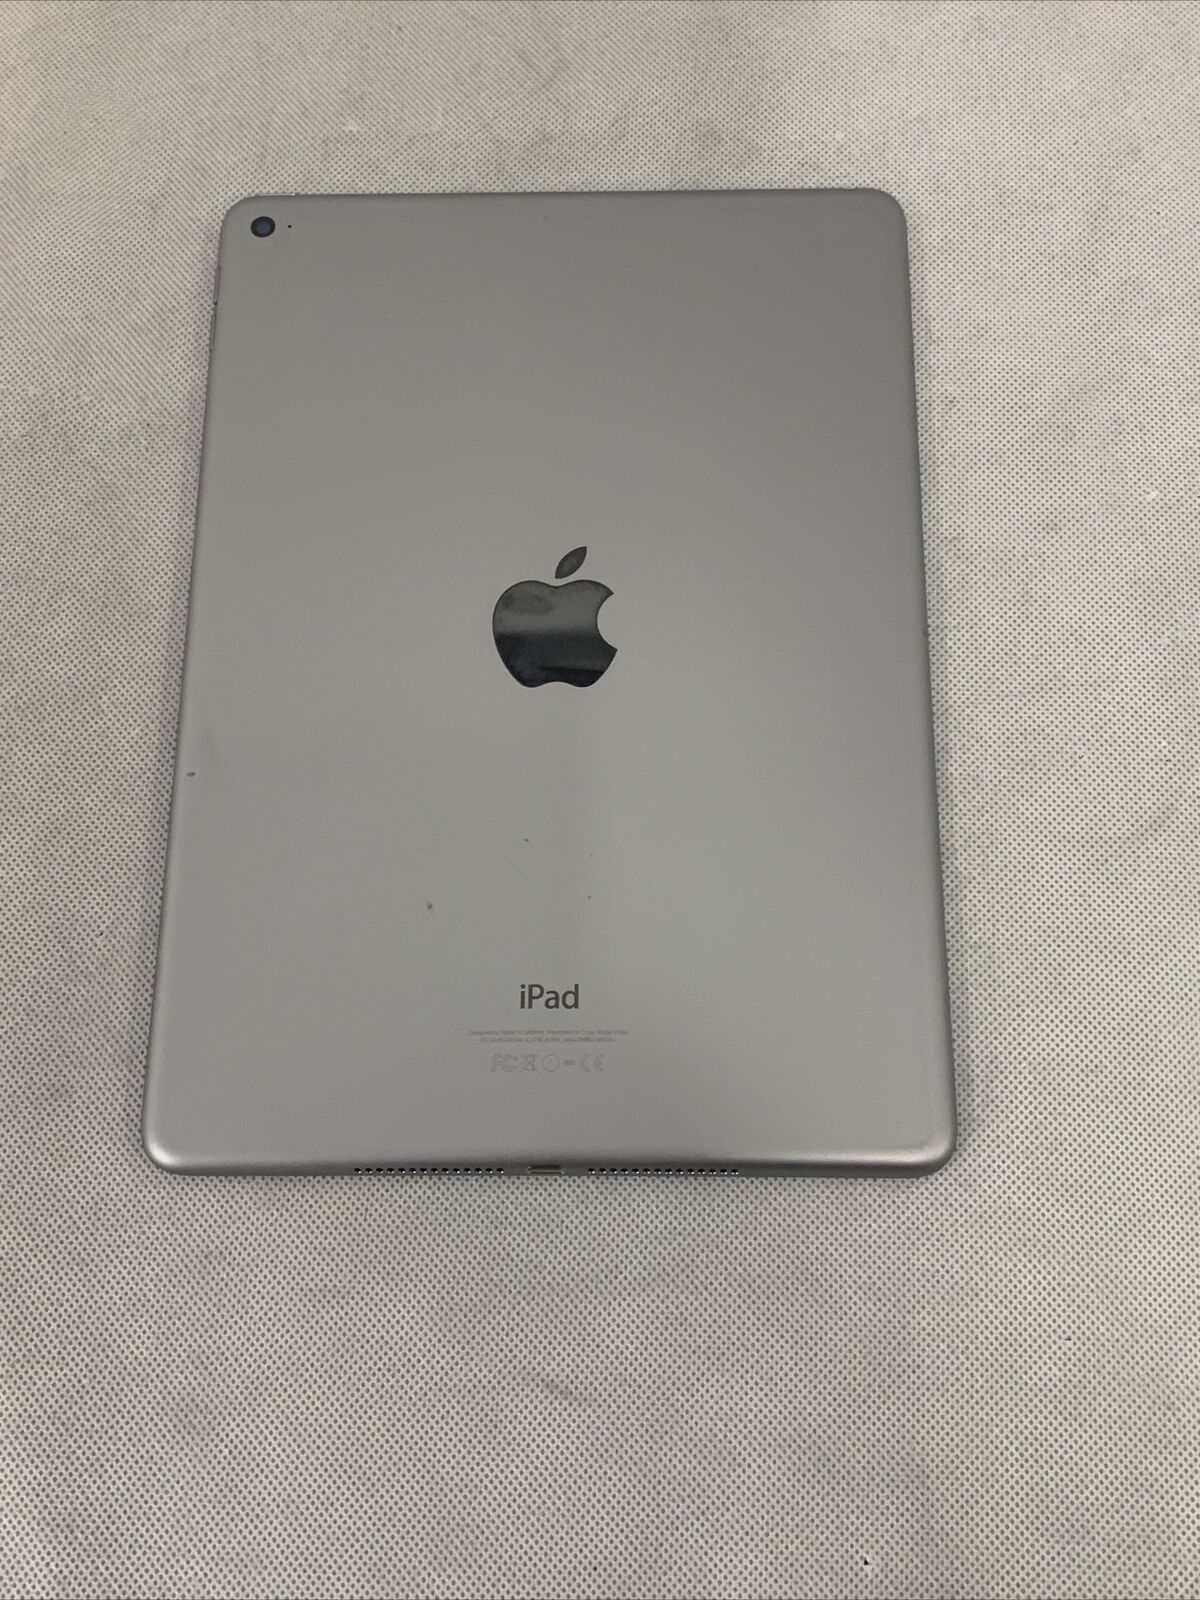 Apple iPad Air 2 16GB, Wi-Fi, 9.7in - Space Gray 888462067928 | eBay